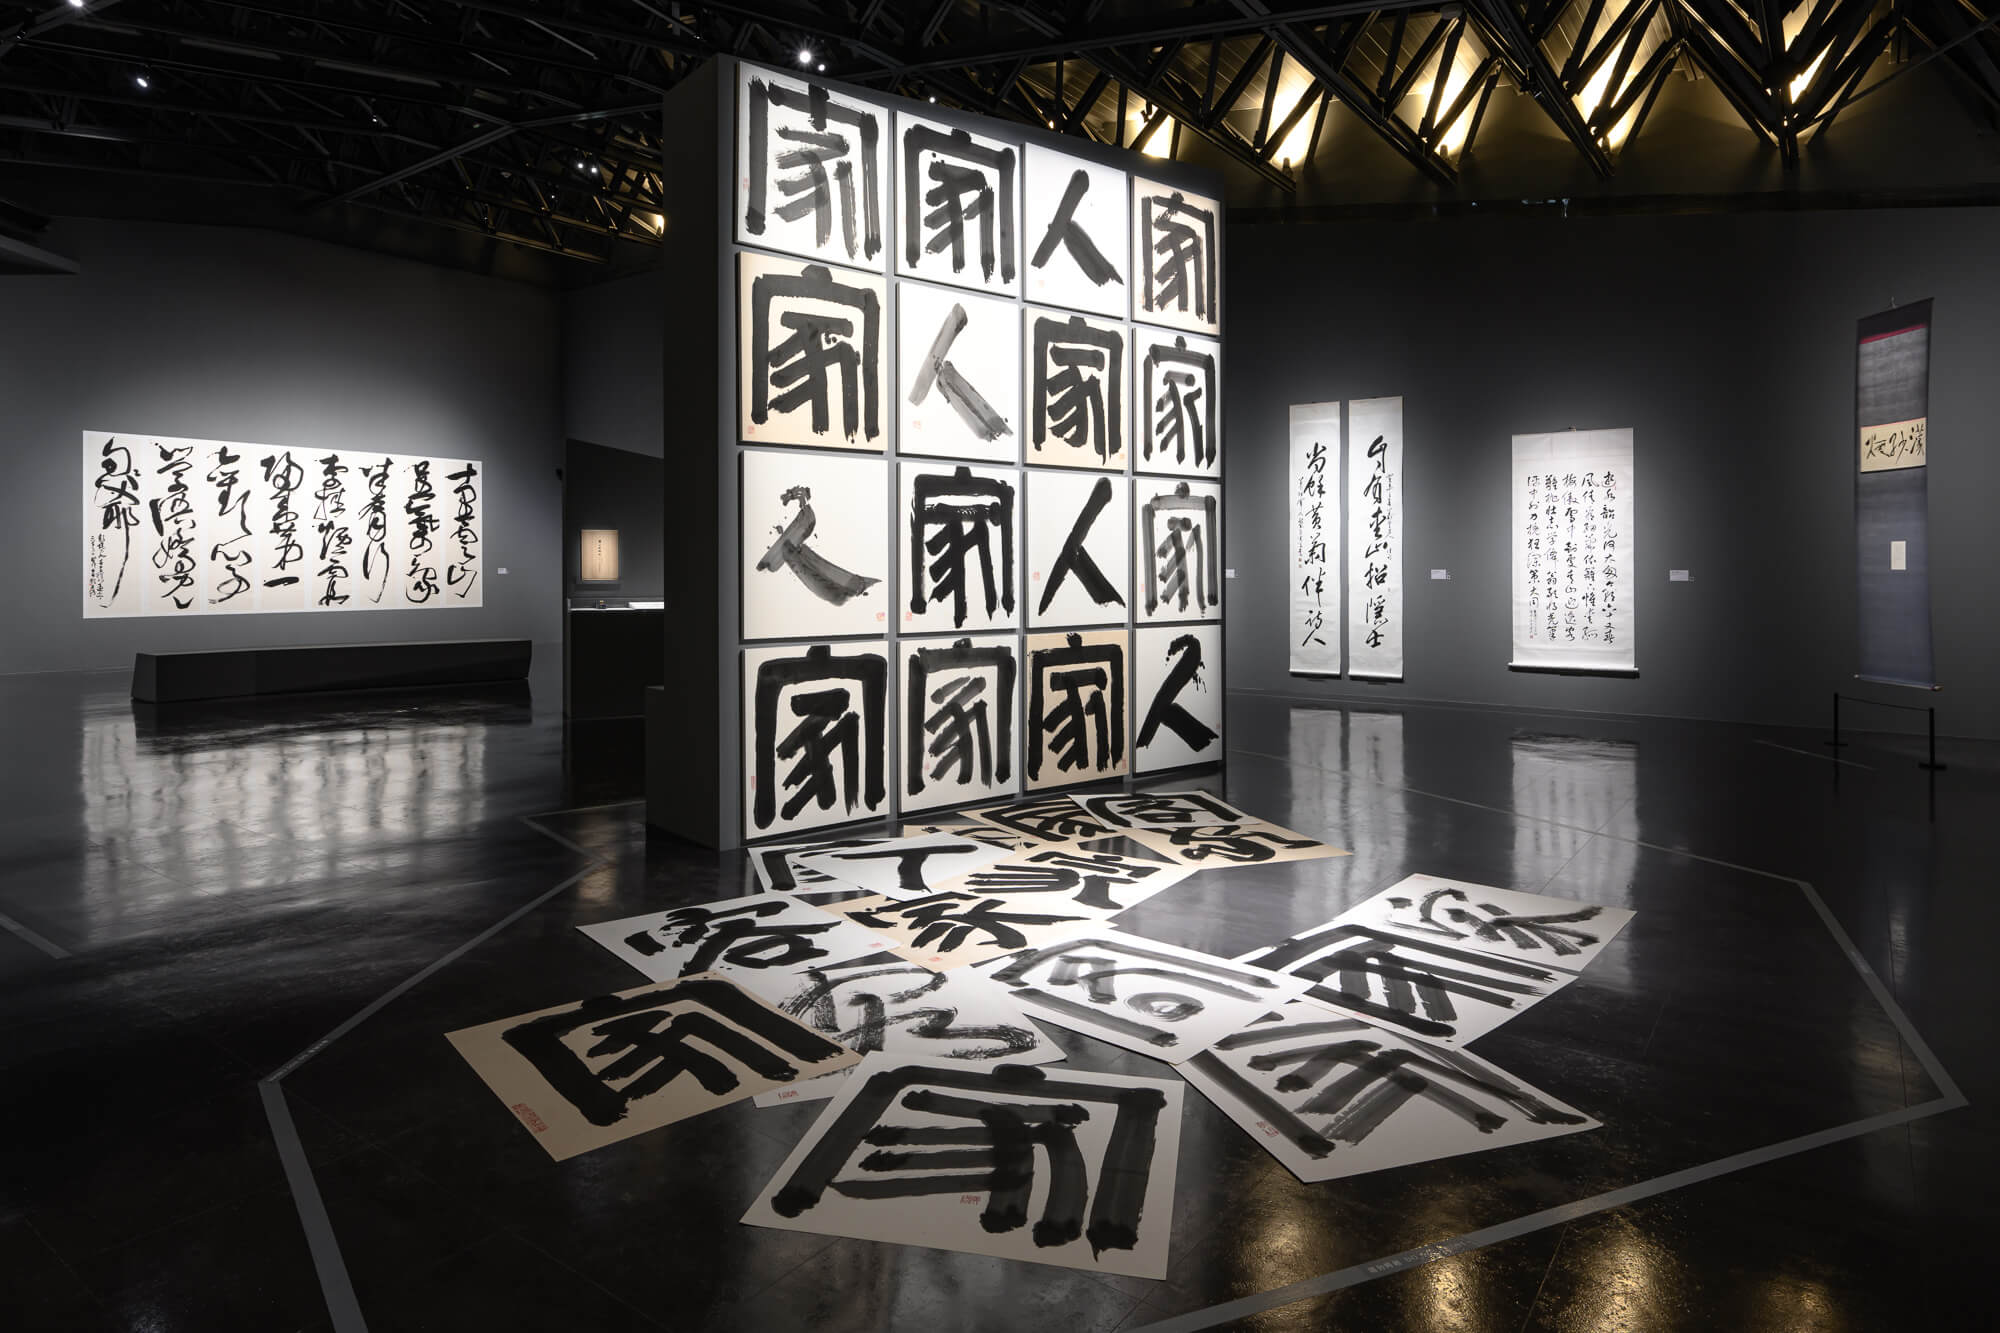 Bảo tàng Mỹ thuật Đào Viên giới thiệu văn hóa Khách Gia thông qua các tác phẩm thư pháp độc đáo. (Ảnh: Bảo tàng Mỹ thuật Đào Viên)